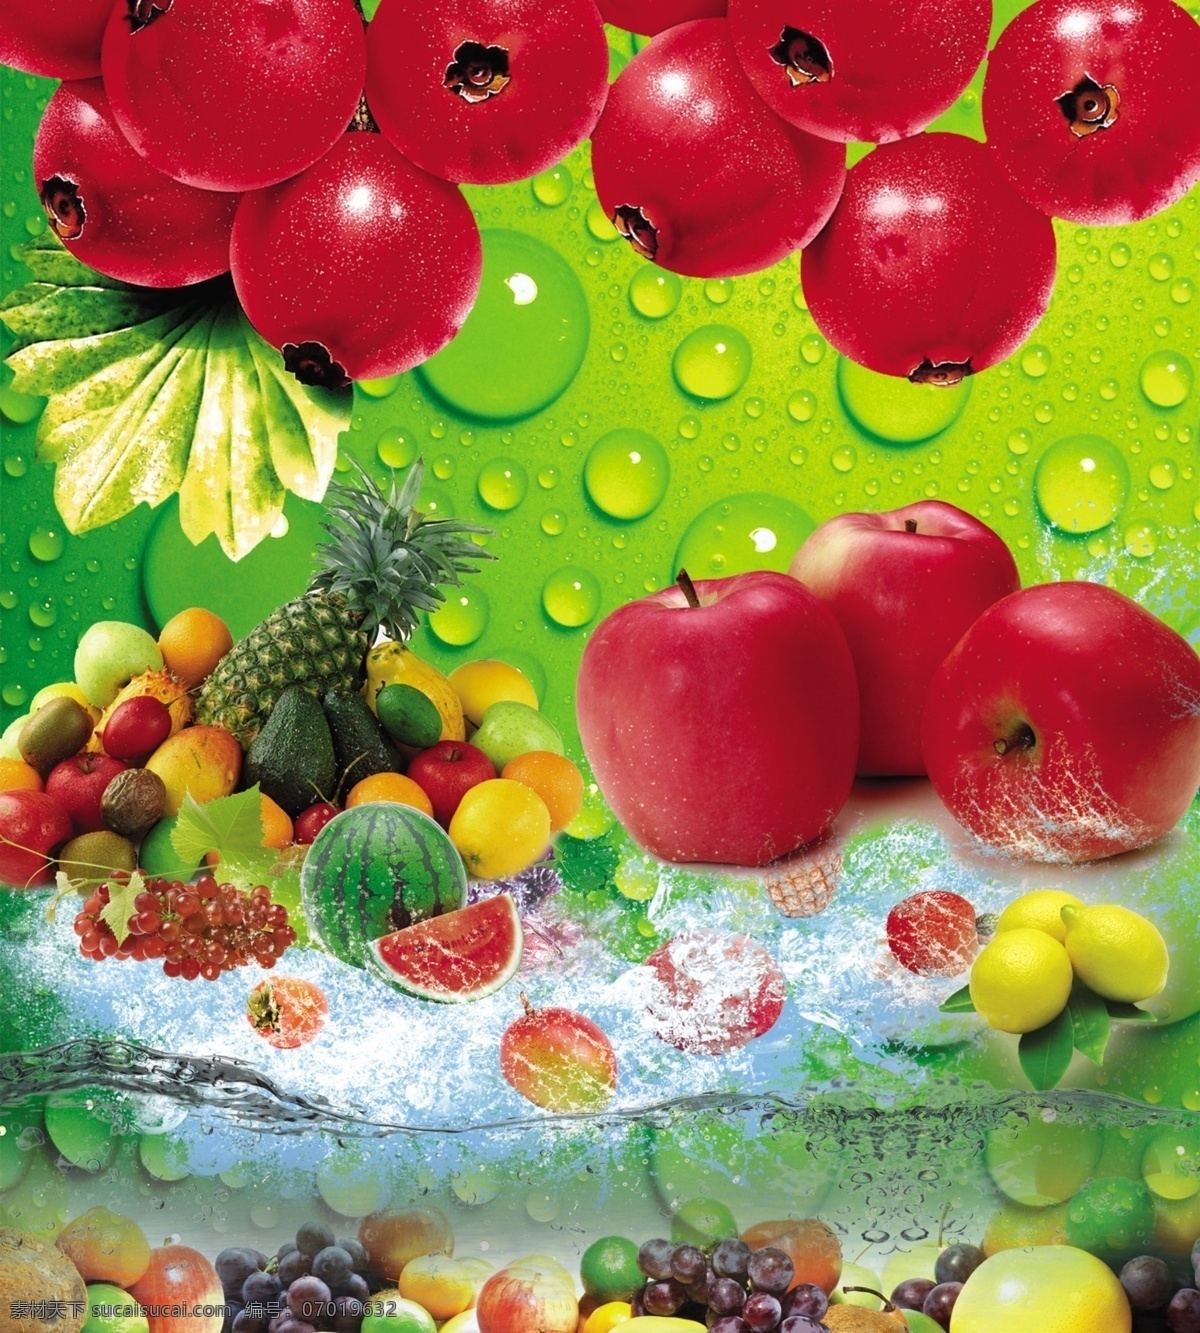 水果免费下载 菠萝 各种水果 苹果 山楂 水波纹 水果 西瓜 夏日冰凉 psd源文件